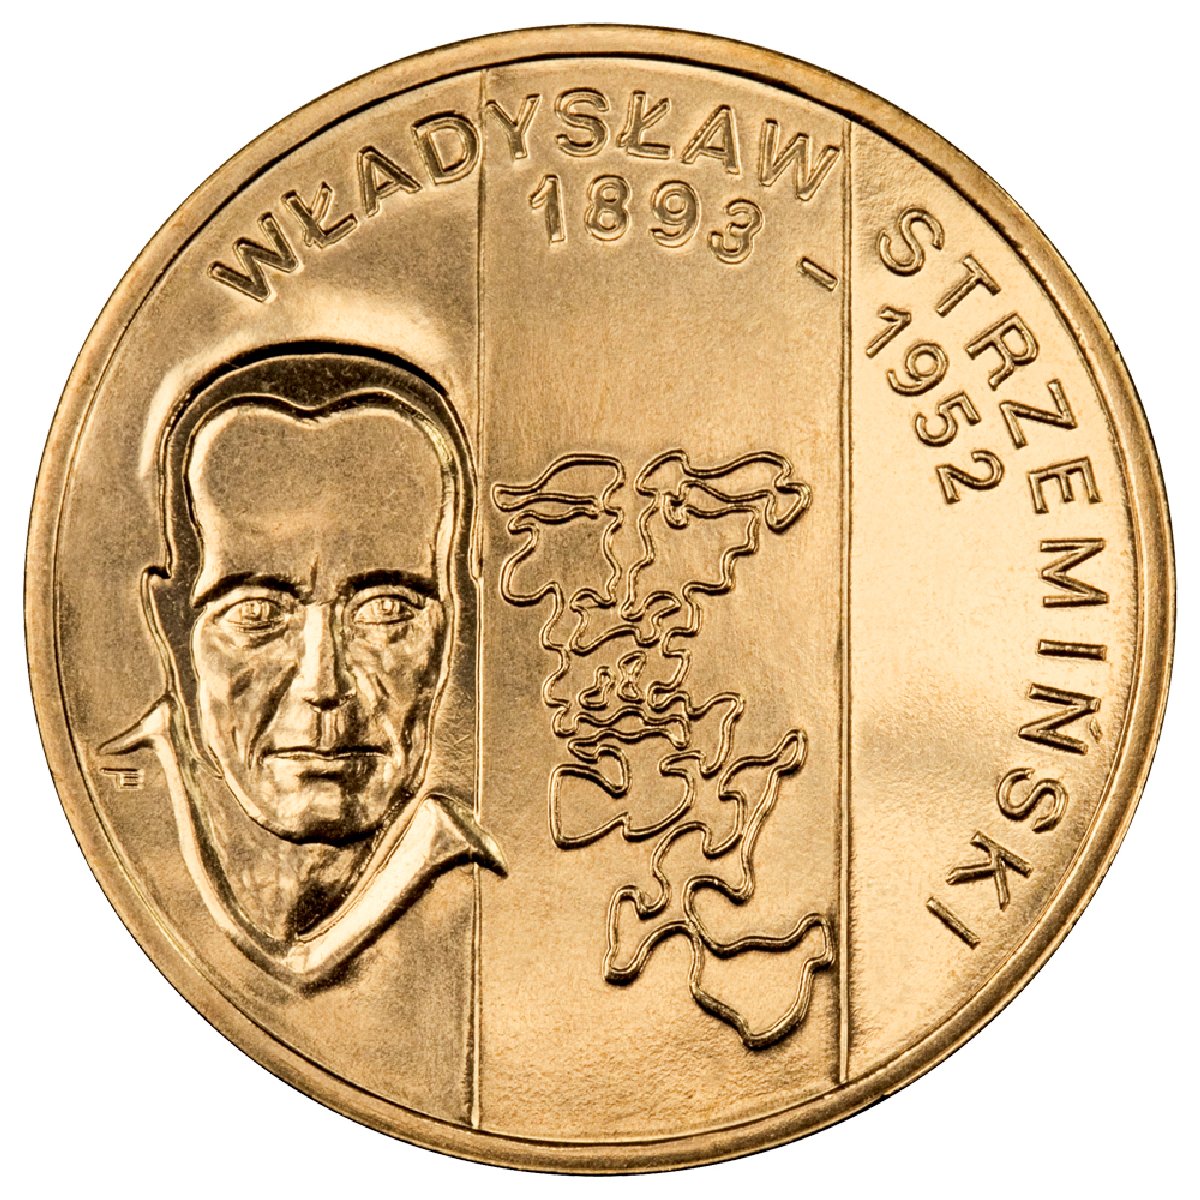 2zl-wladyslaw-strzeminski-1893-1952-rewers-monety